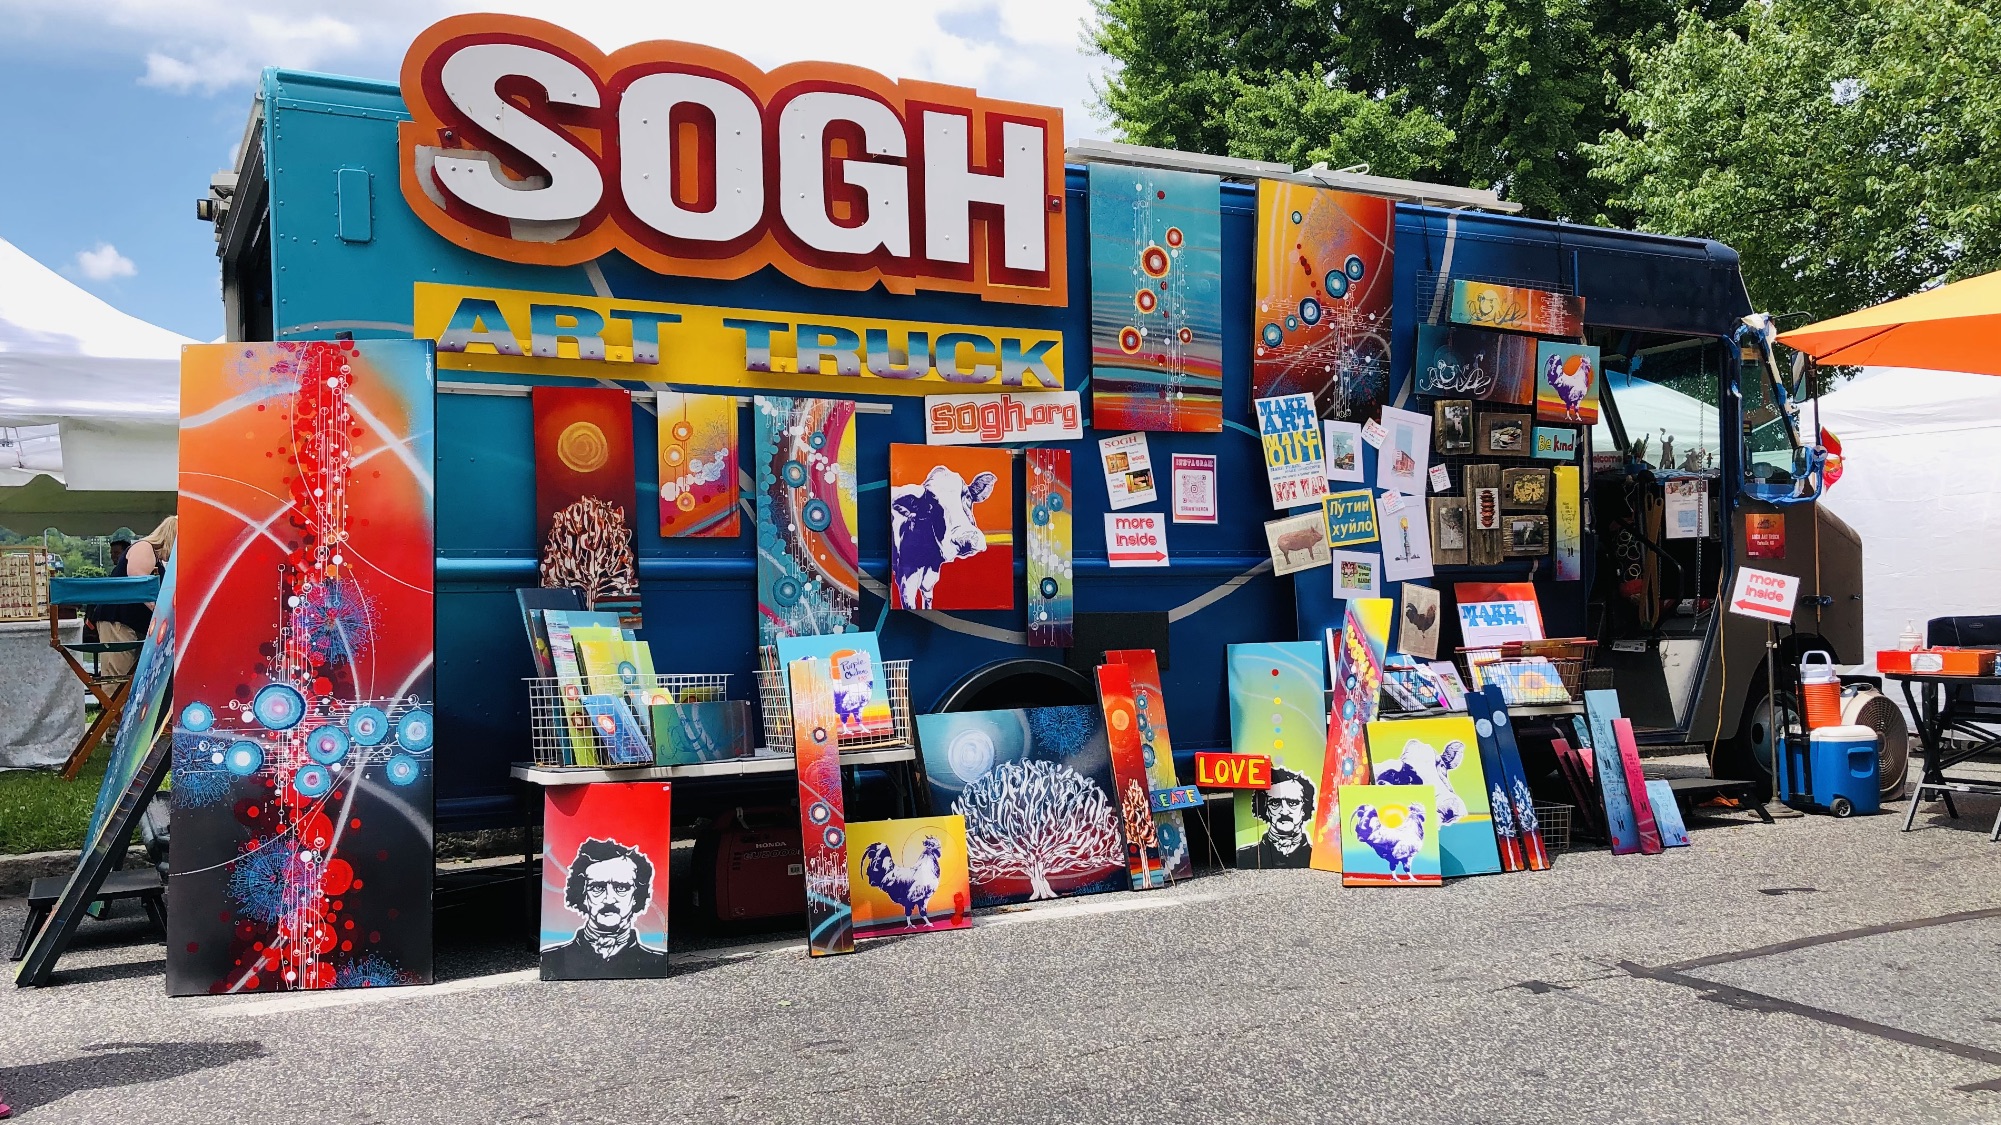 SOGH Art Truck